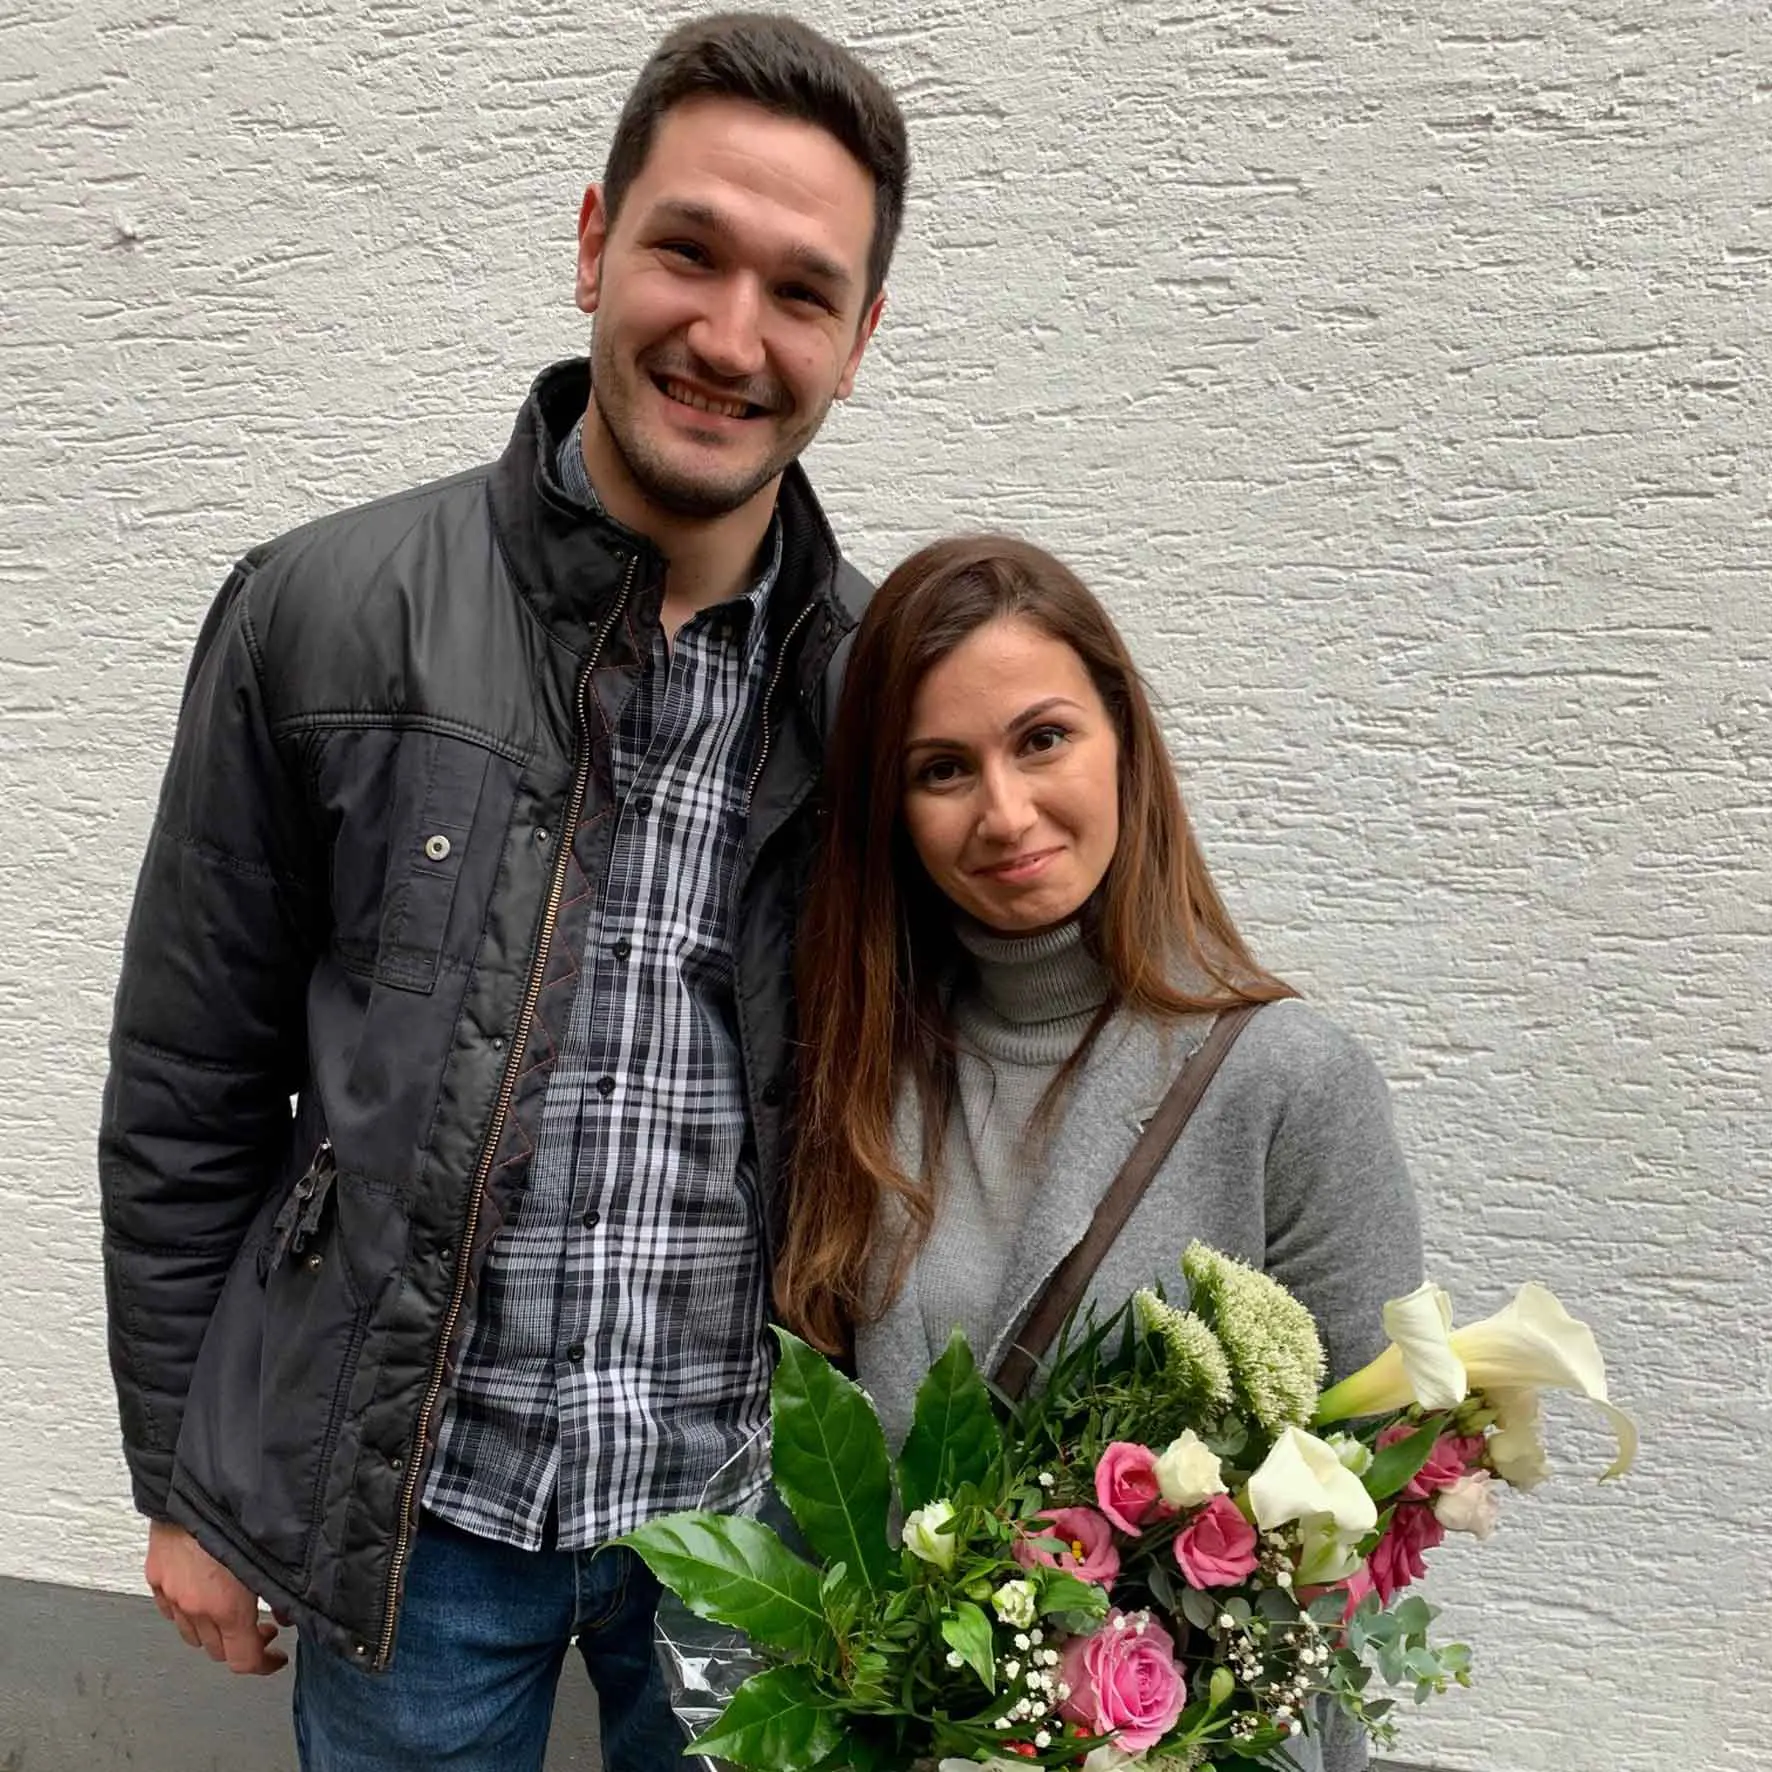 Zufriedene Immobilieneigentümer in Köln Immobilienmakler Köln nach erfolgreichem Notartermin mit überreichtem Blumenstrauß